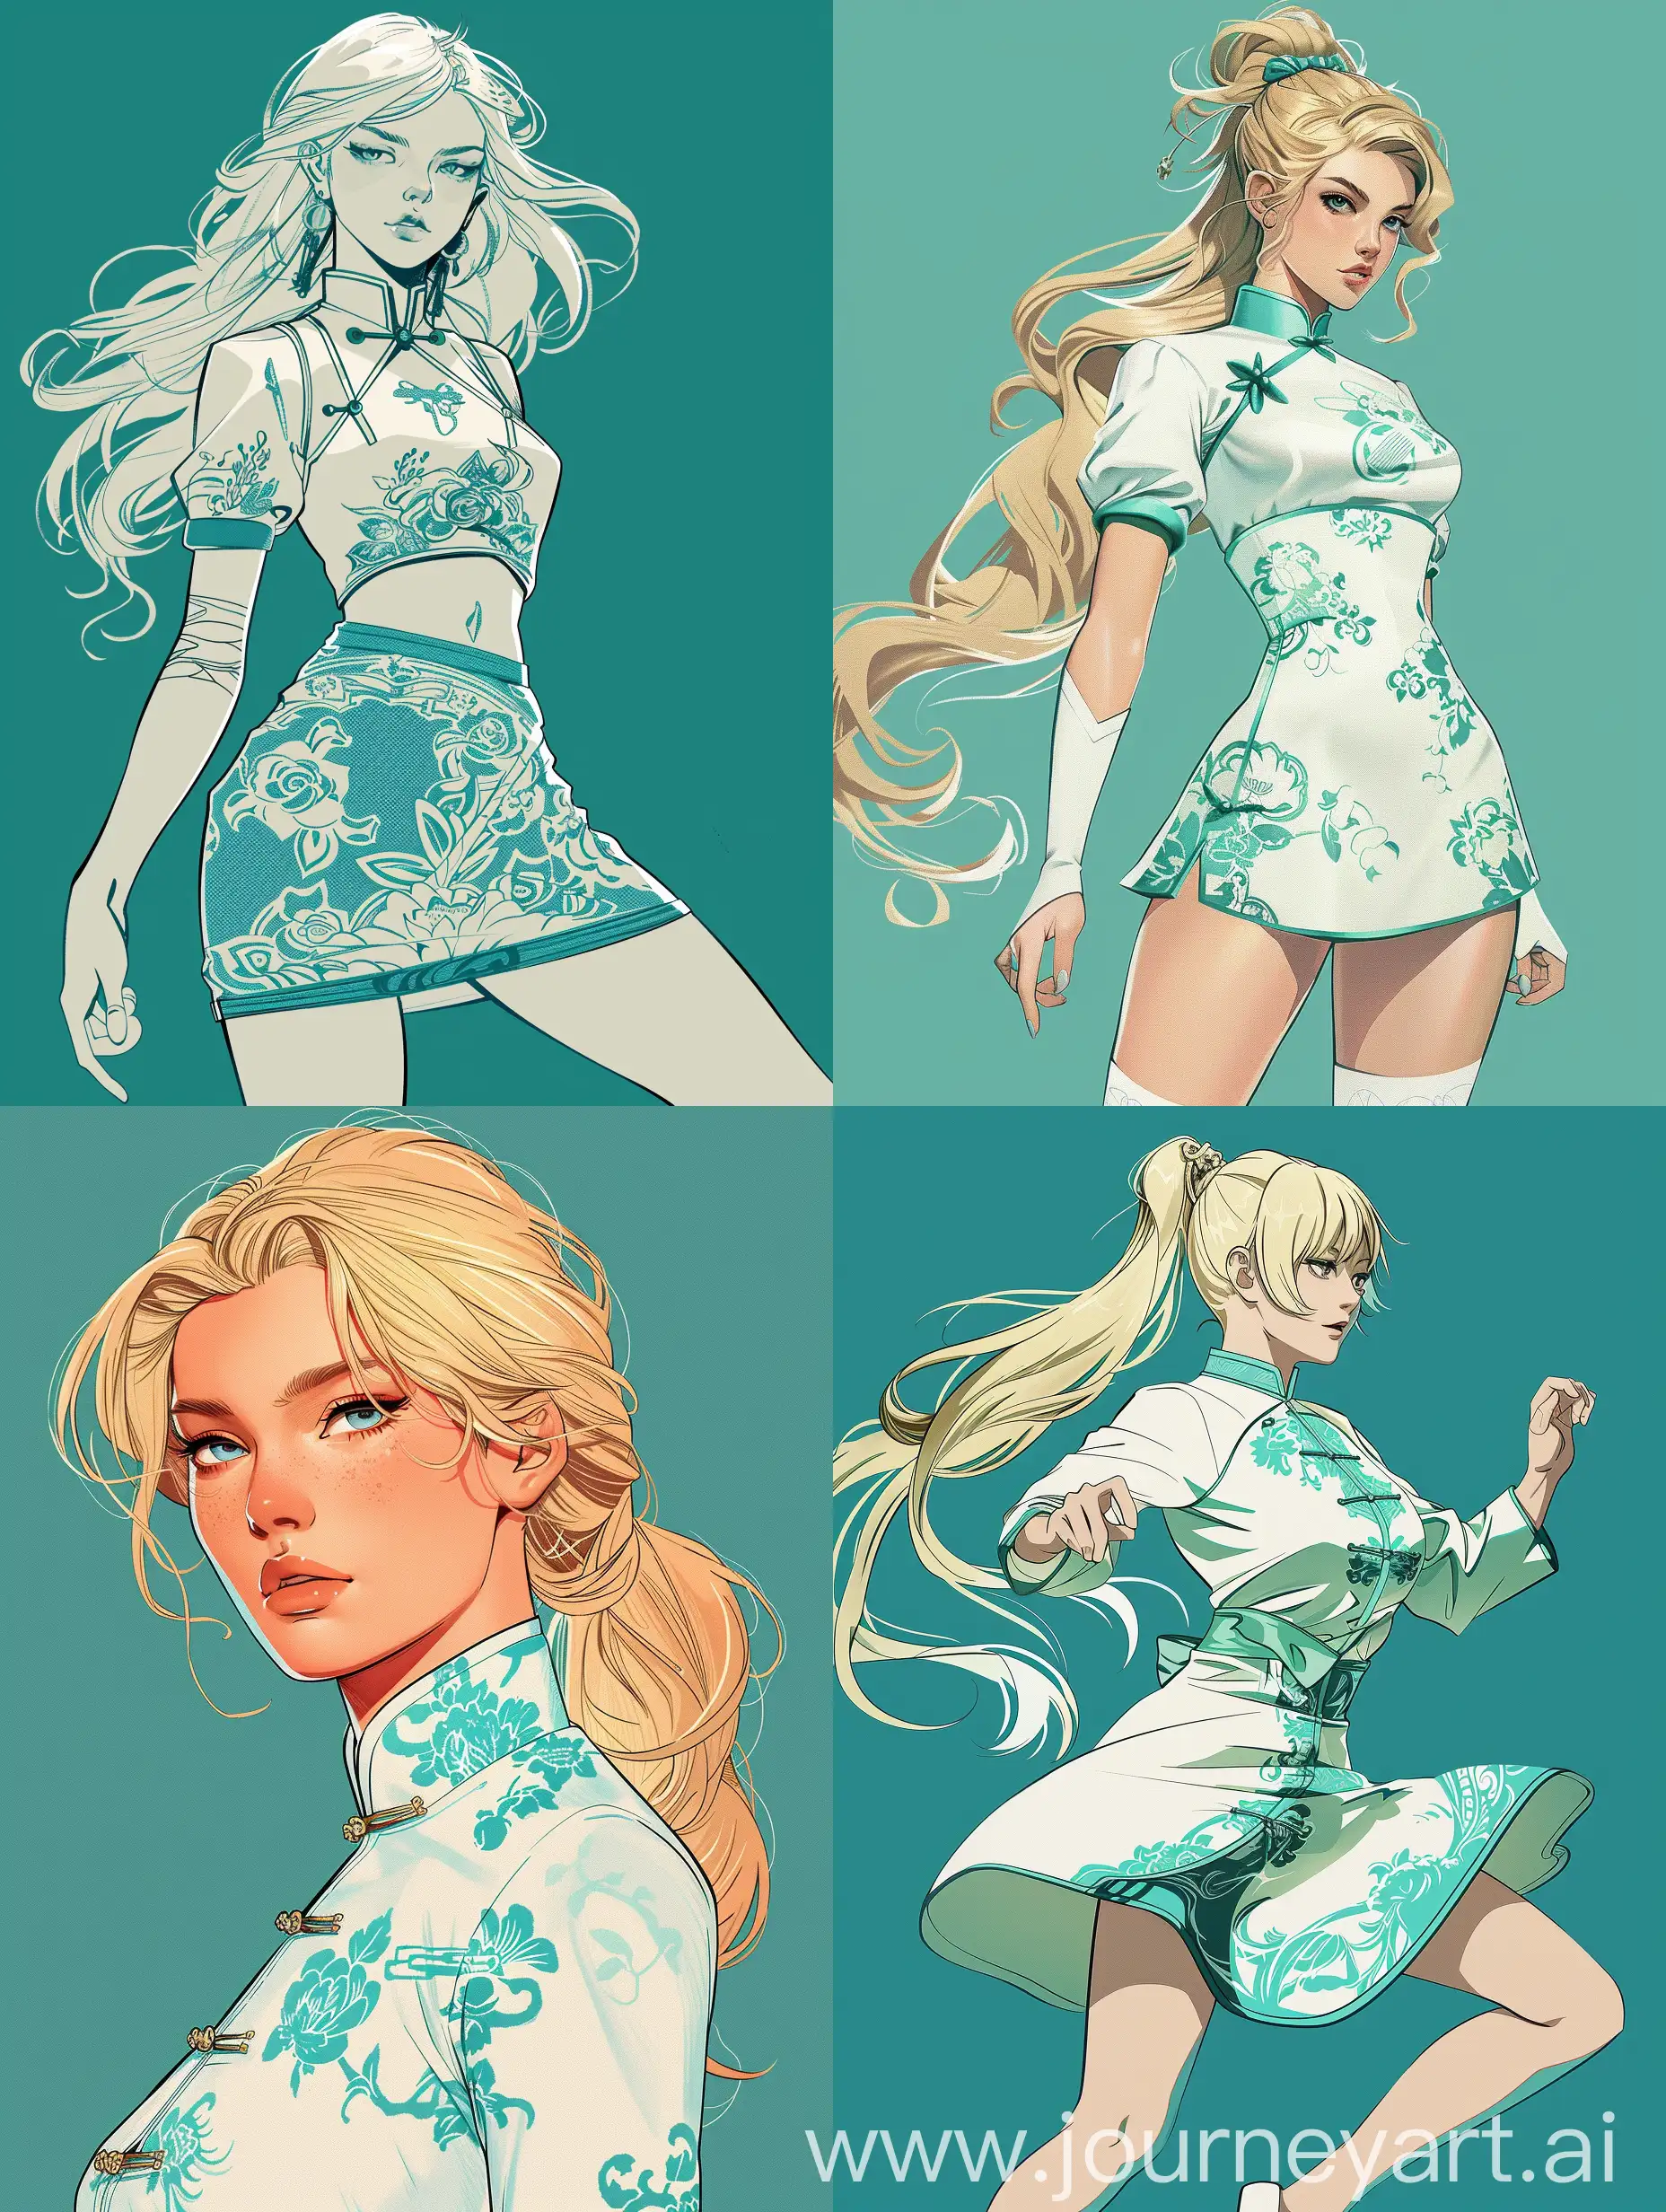 Digital-Art-of-a-Heroic-Blonde-Girl-in-Teal-Qipao